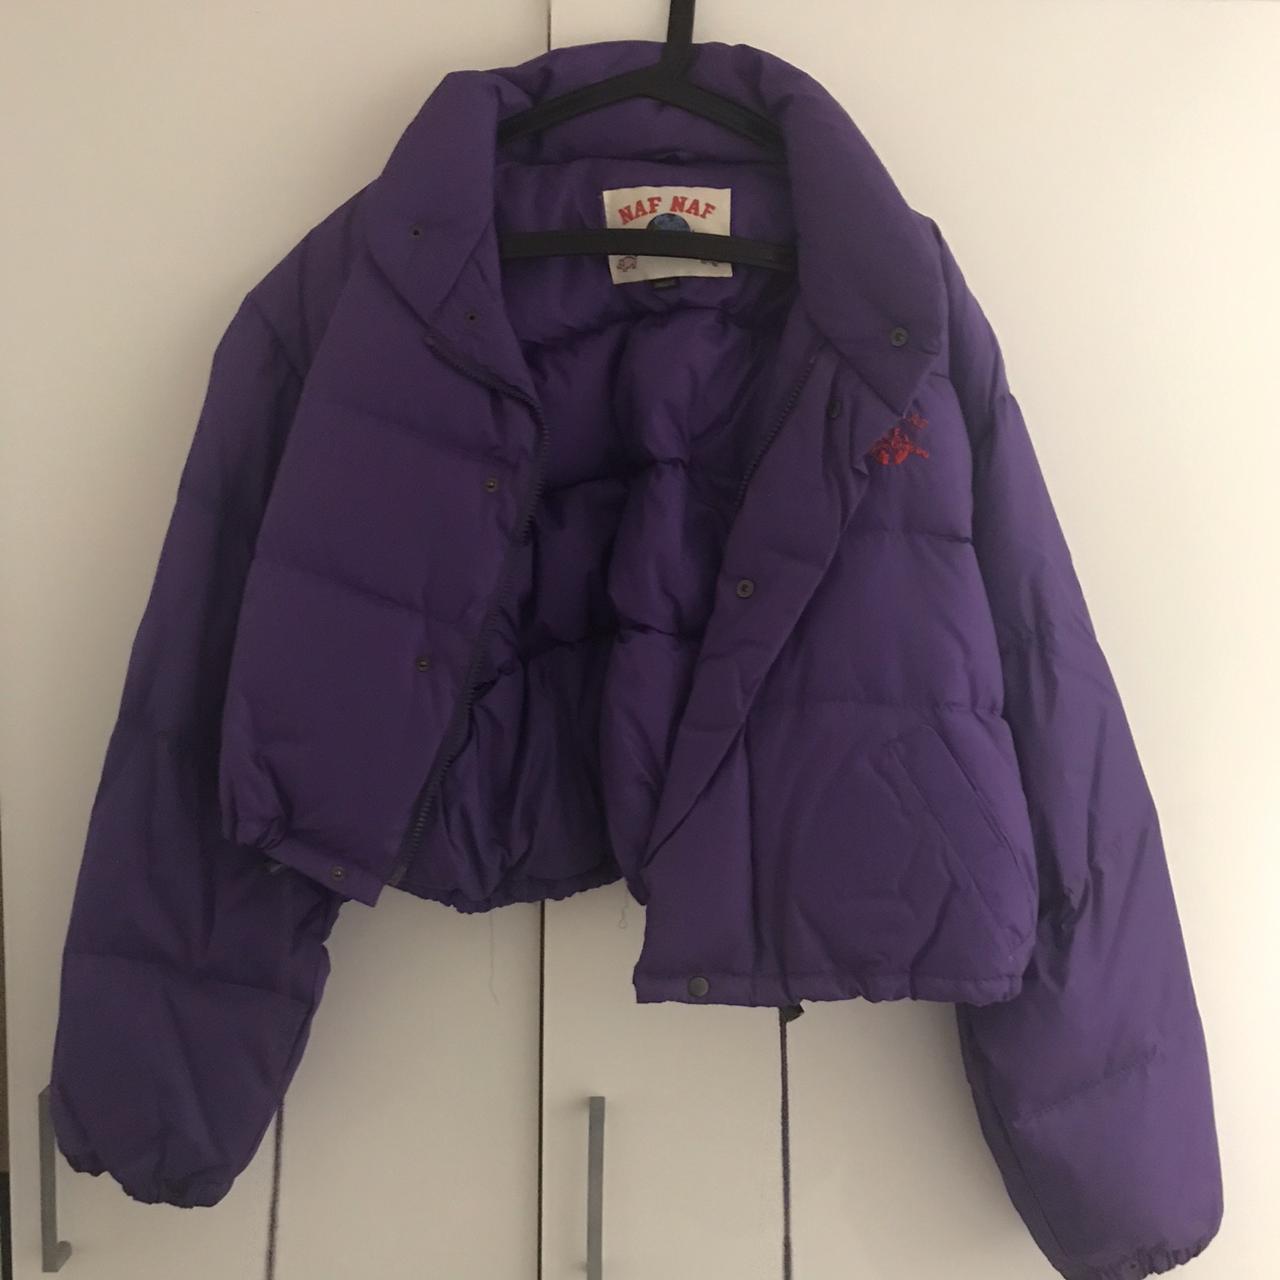 Vintage Purple Naf Naf Puffer Jacket S/M *Happy to... - Depop